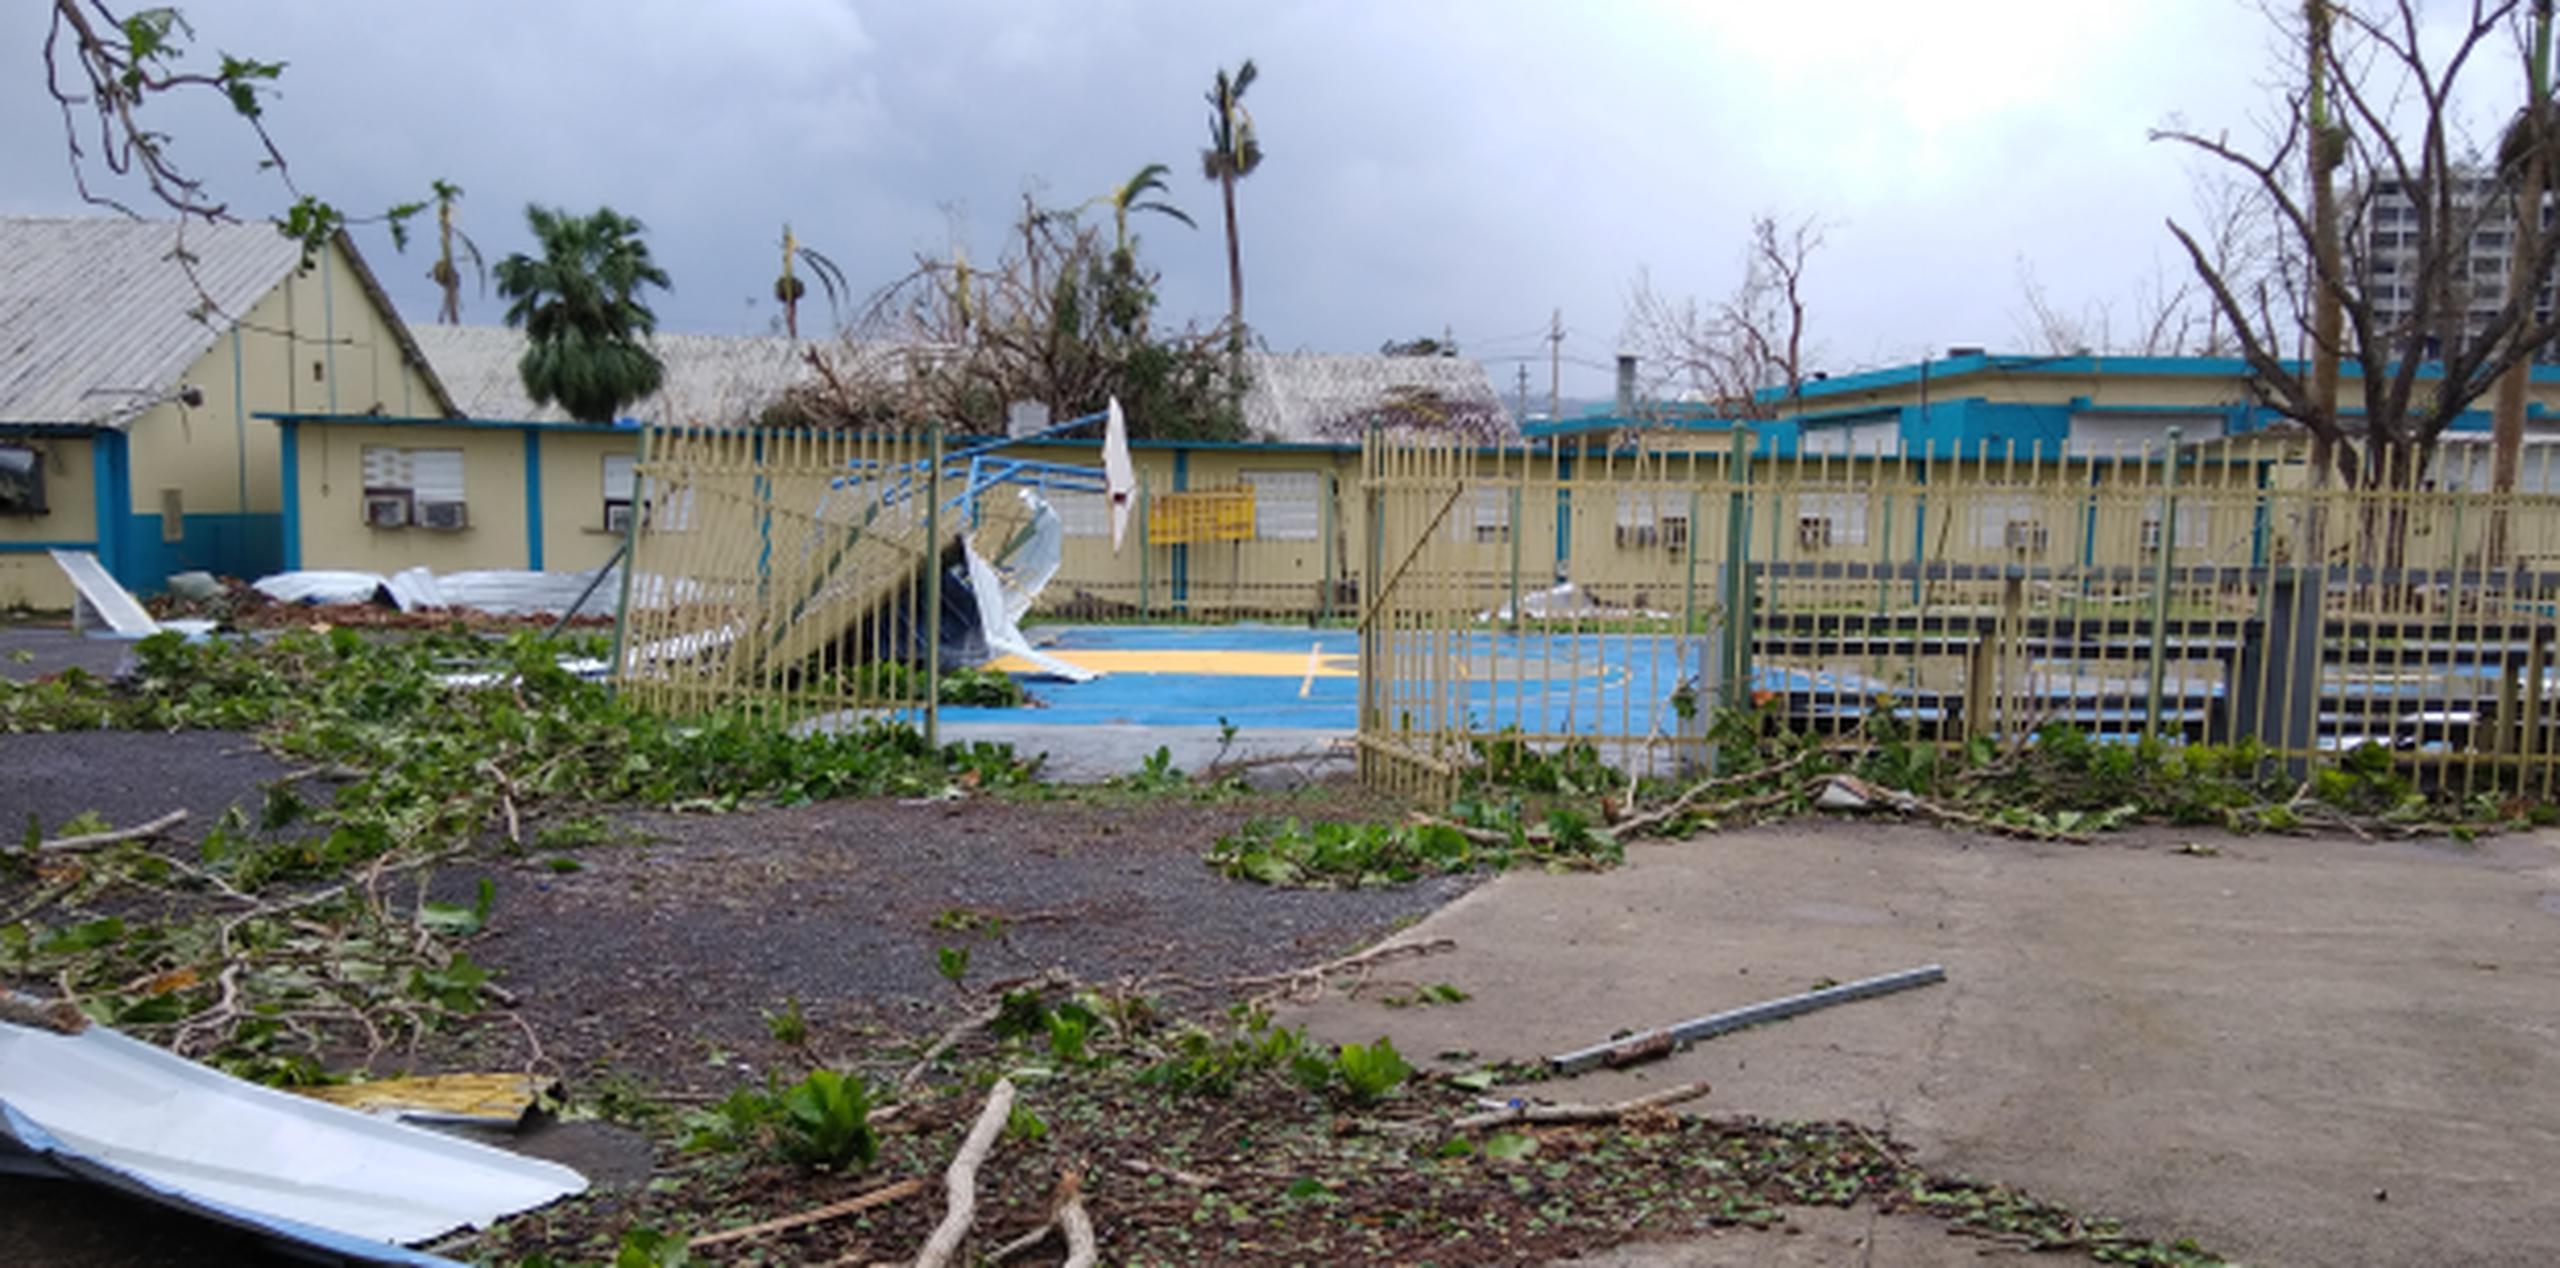 La escuela vocacional República de Costa Rica, en Caguas, tras el huracán María. (Archivo)